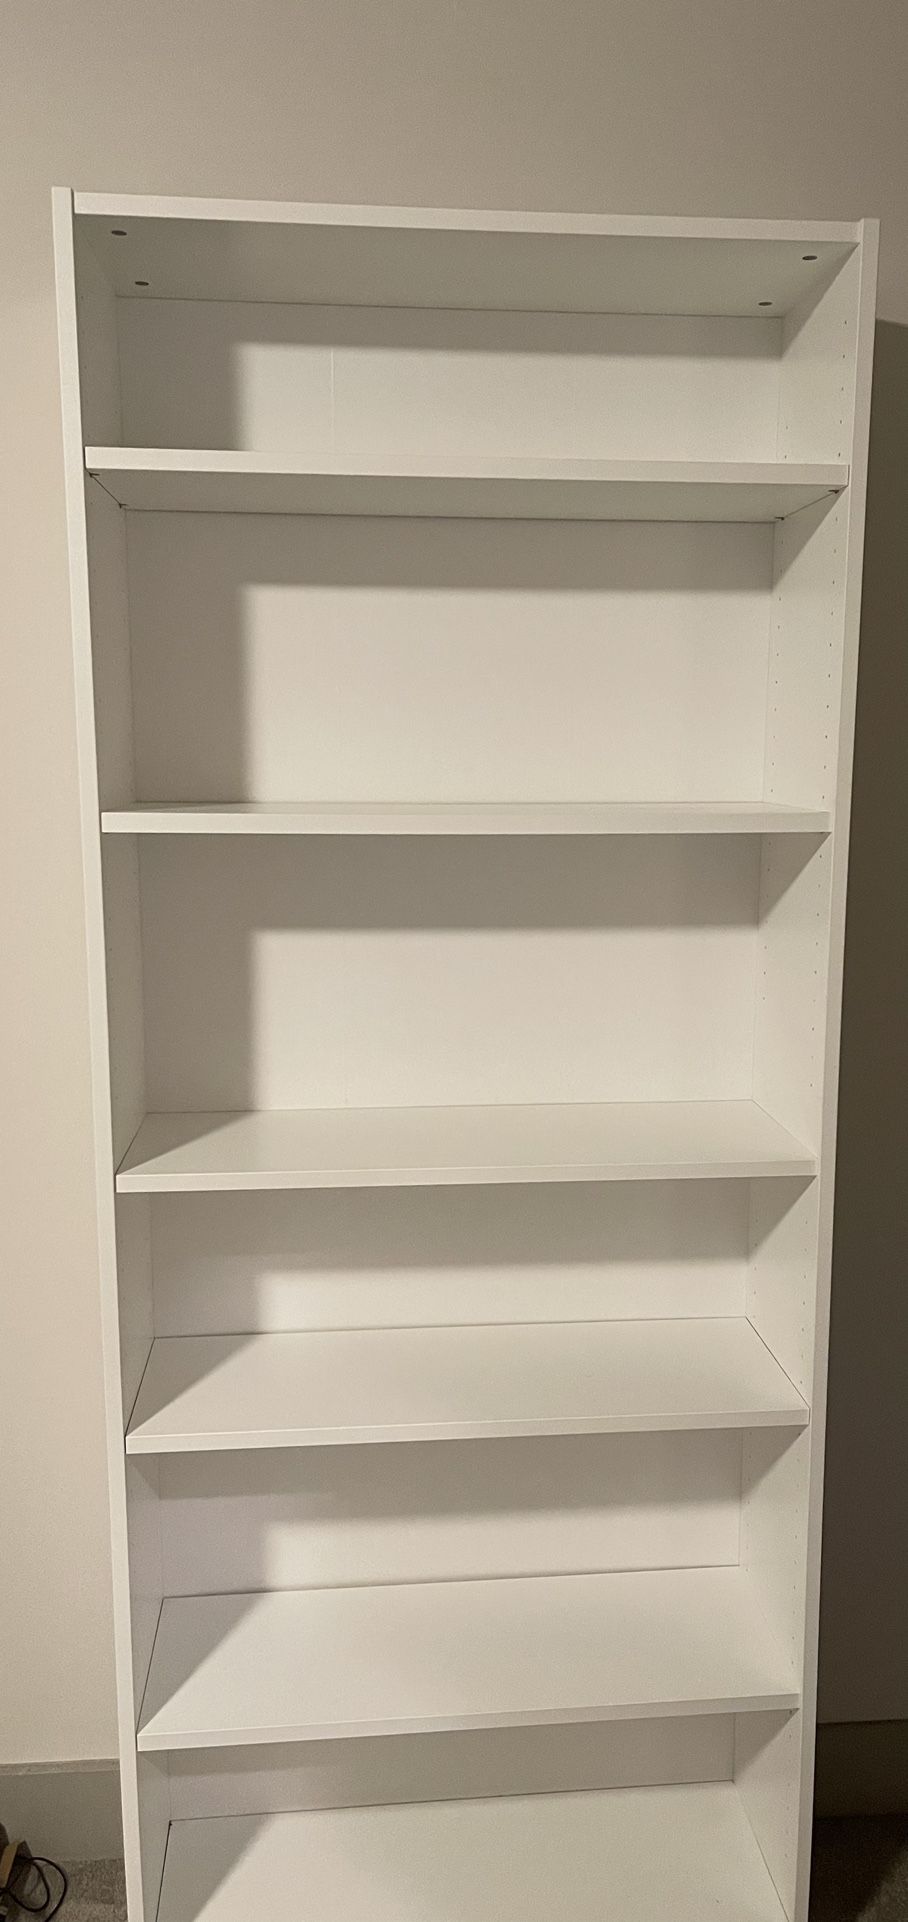 Adjustable Shelves 